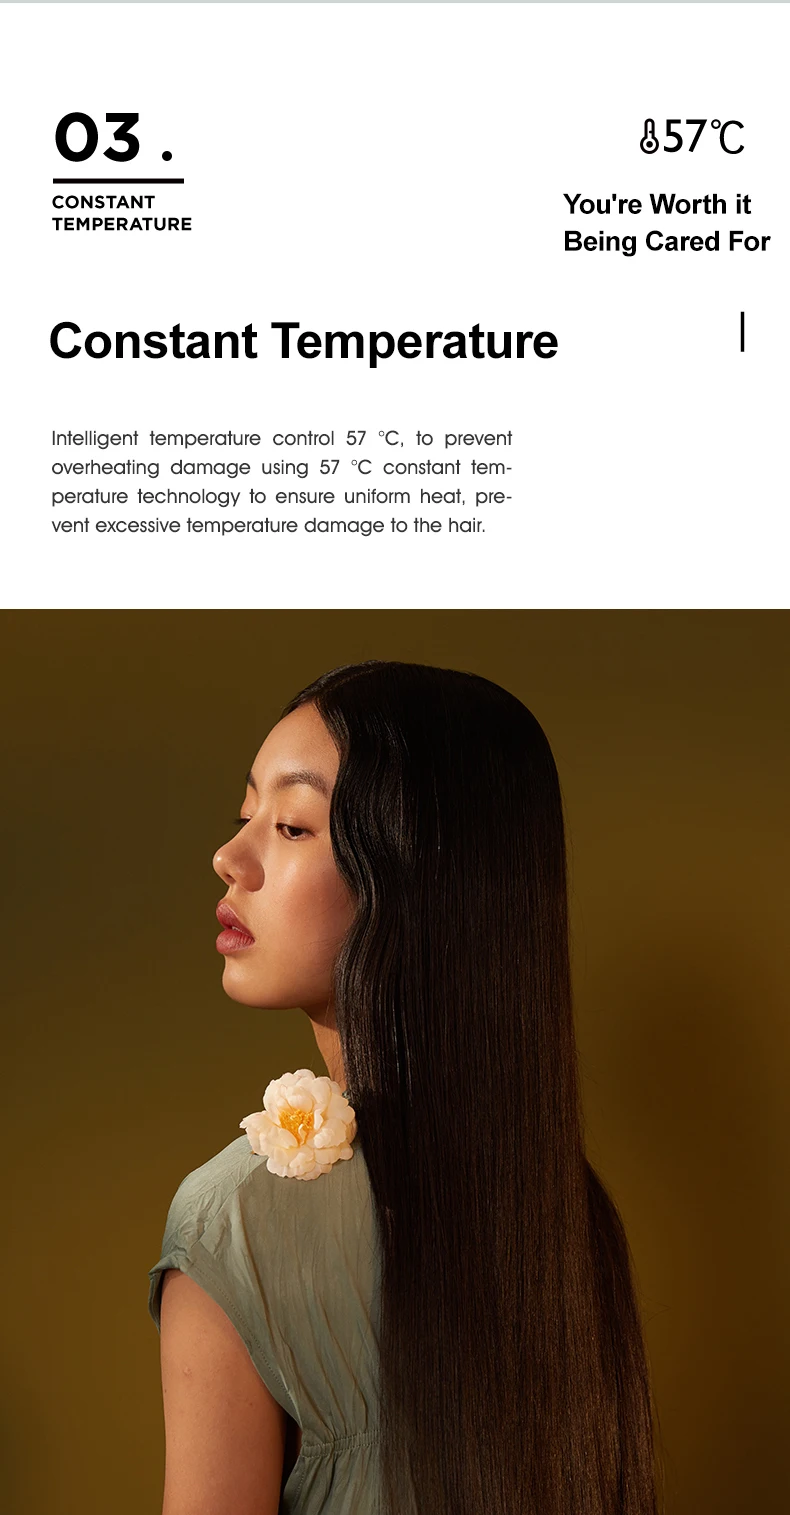 Xiaomi SOOCAS волосы с отрицательными ионами DryerVAN GOGH H3S зеленая Дикая роза 1800 Вт быстрая сушка двойная защита от температуры